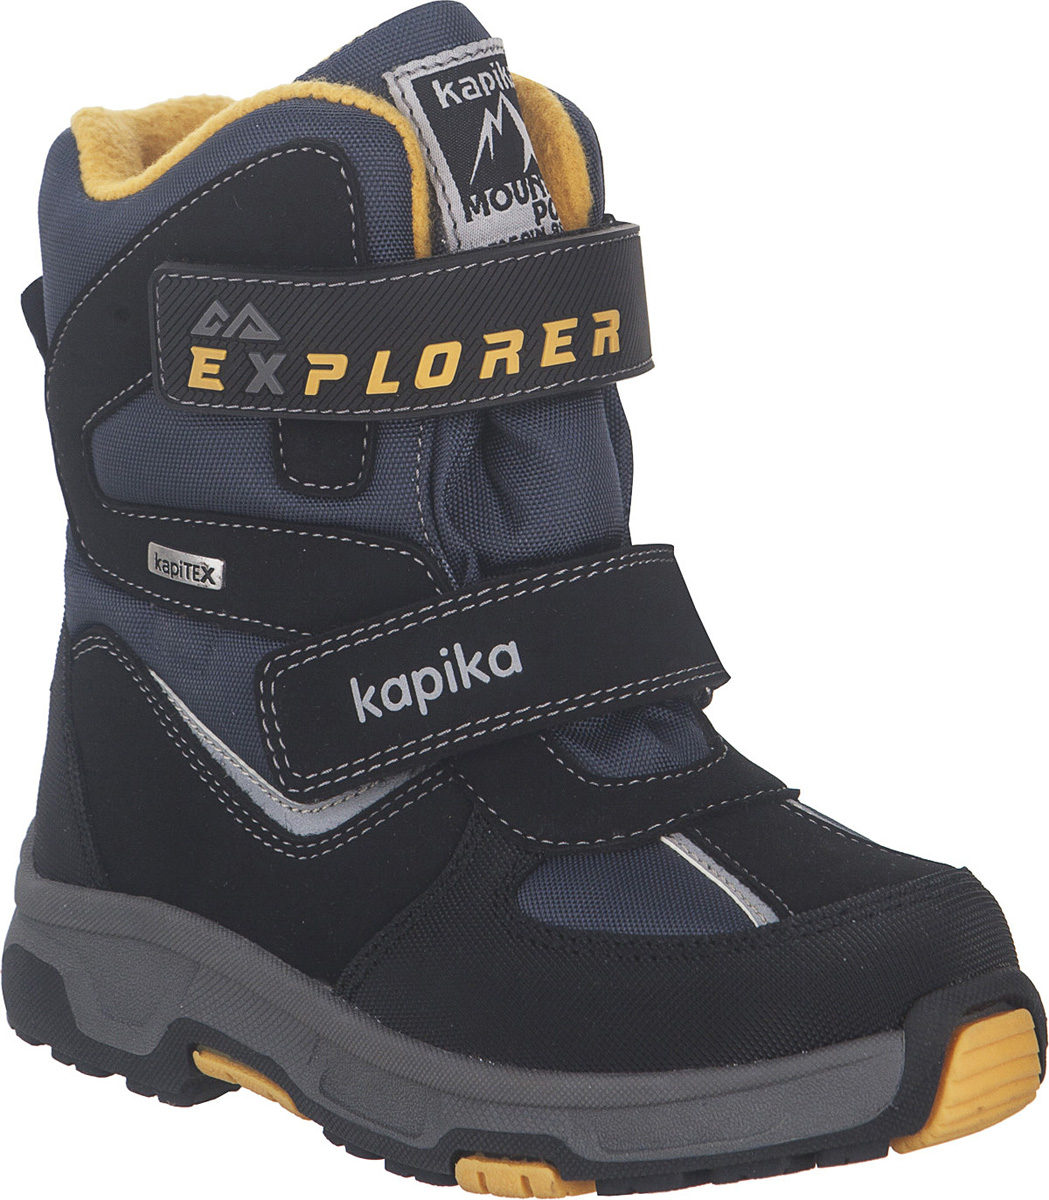 Ботинки для мальчика Kapika KapiTEX, цвет: черный, синий, желтый. 43207-2. Размер 33